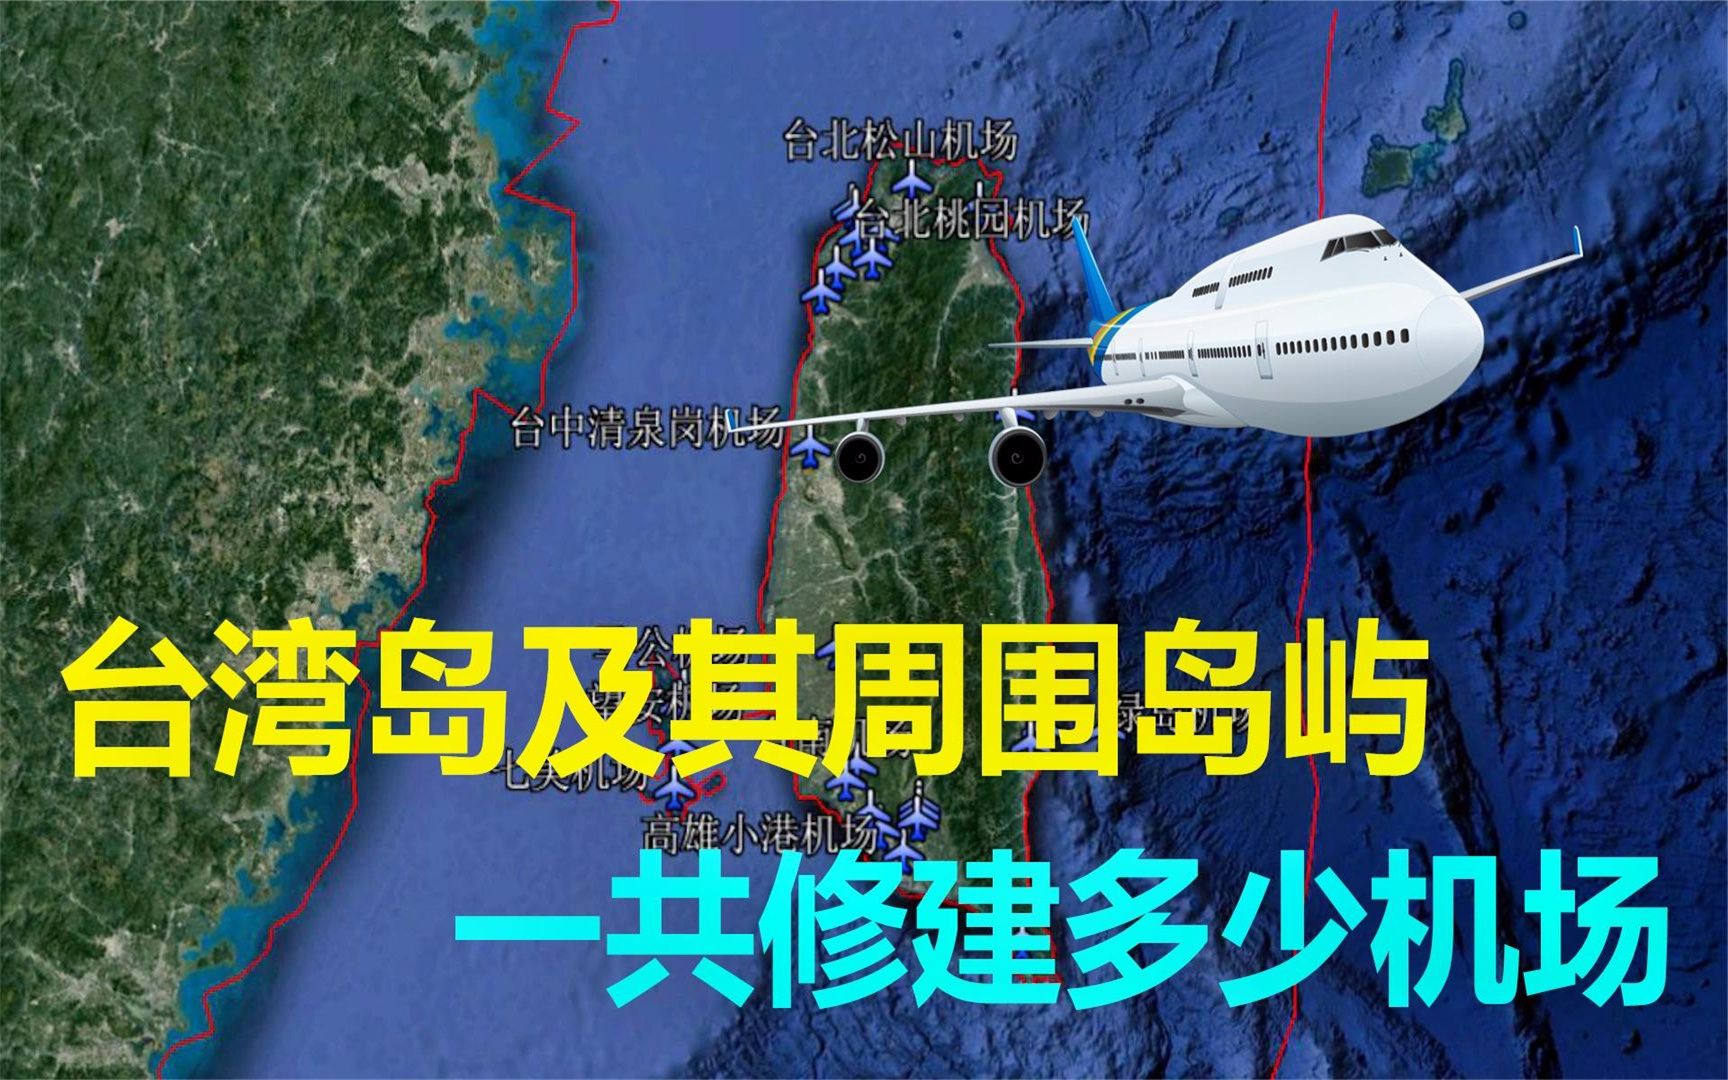 我国台湾岛机场分布情况面积不大机场密集主要集中在哪